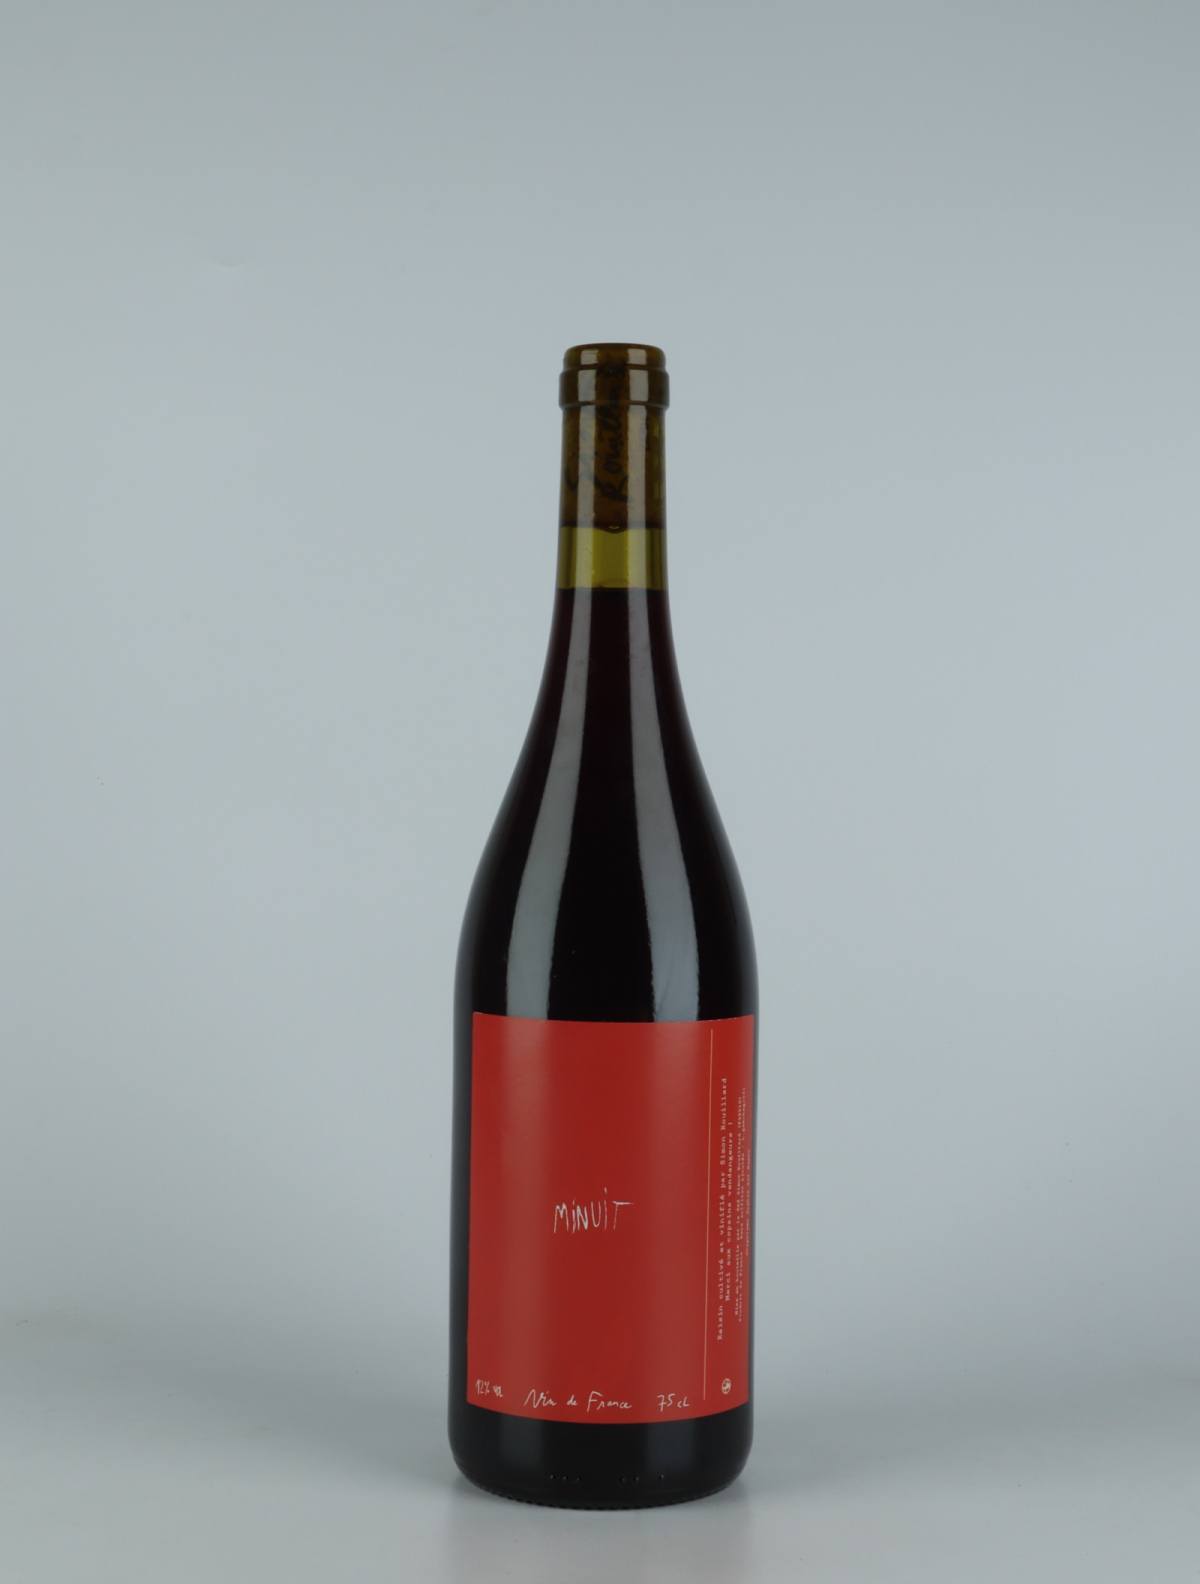 A bottle 2021 Minuit Red wine from Simon Rouillard, Loire in France